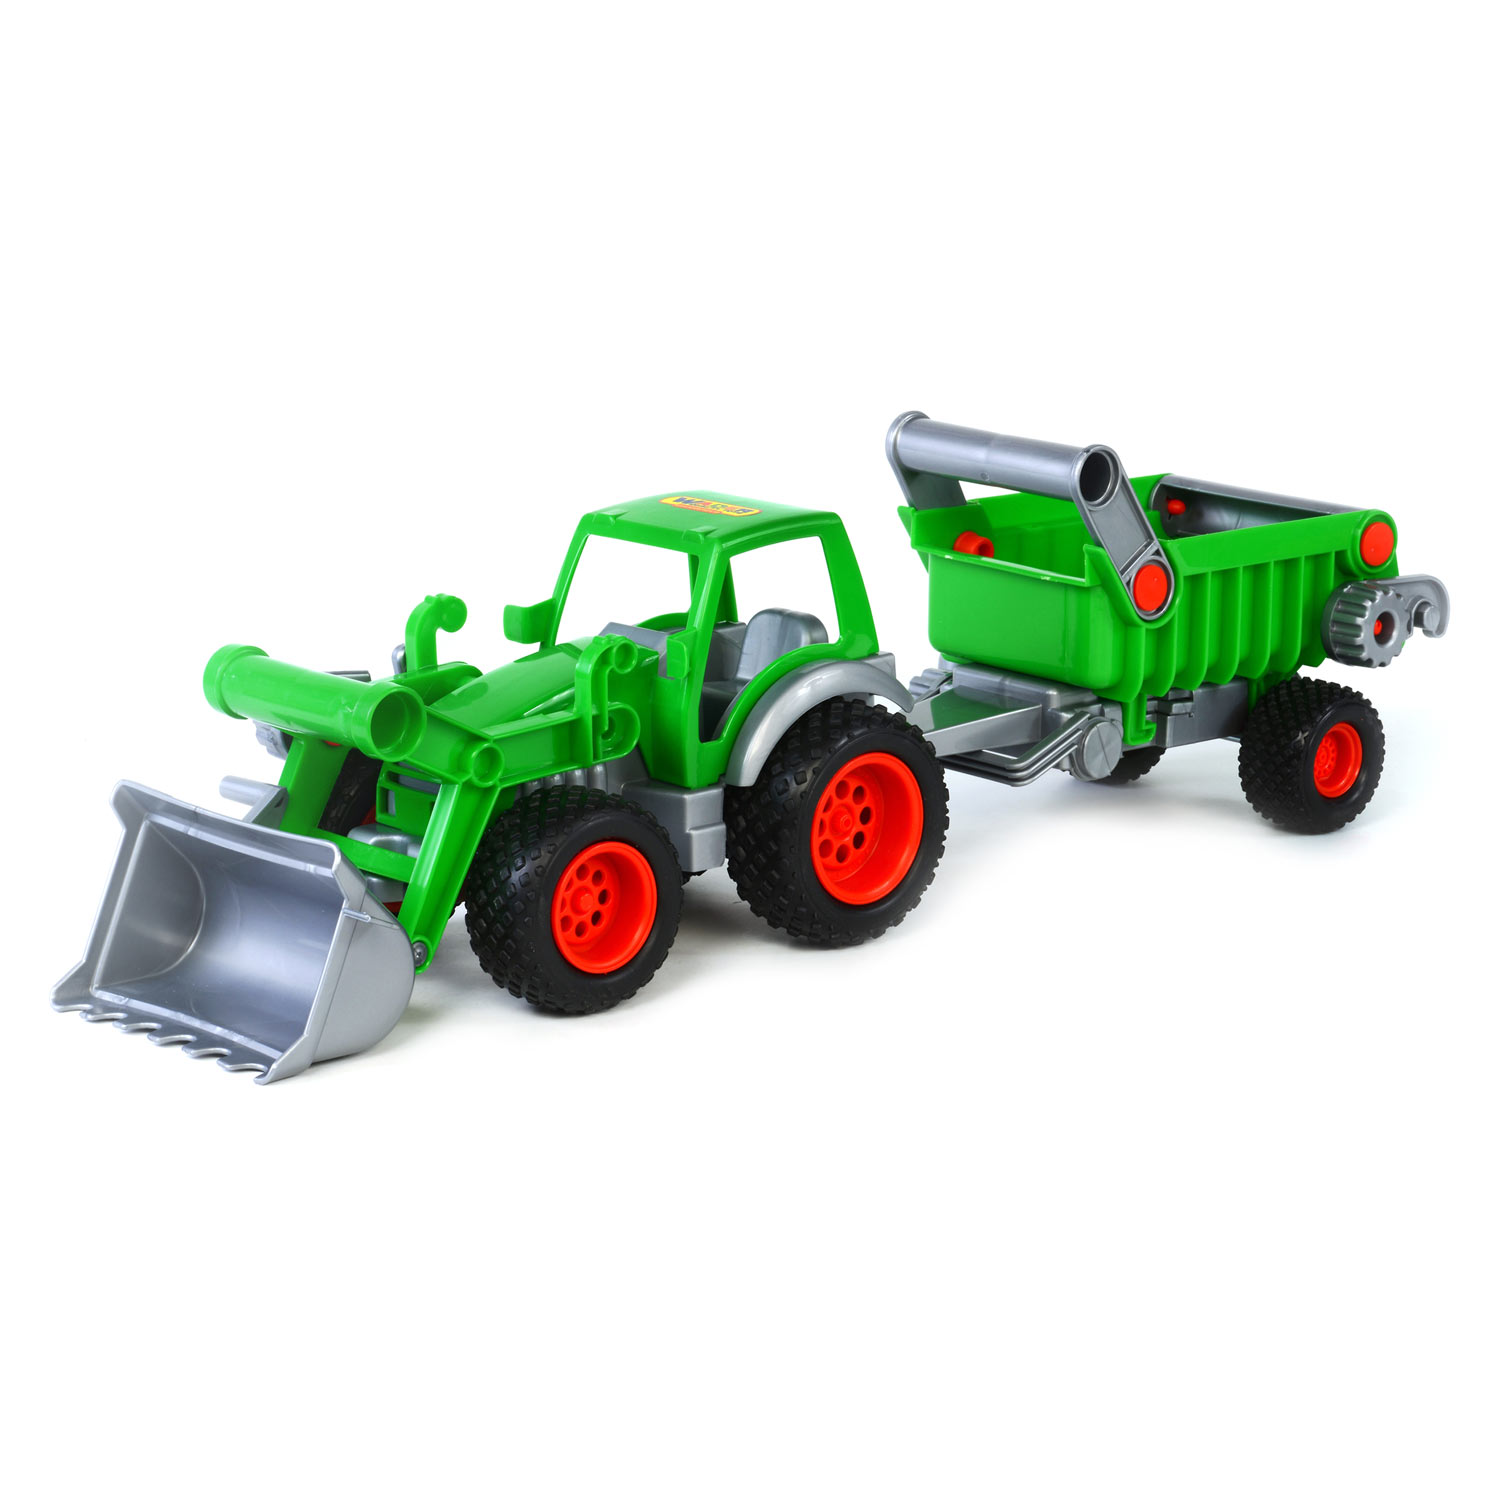 Cavallino Groene Tractor met Voorlader en Aanhanger